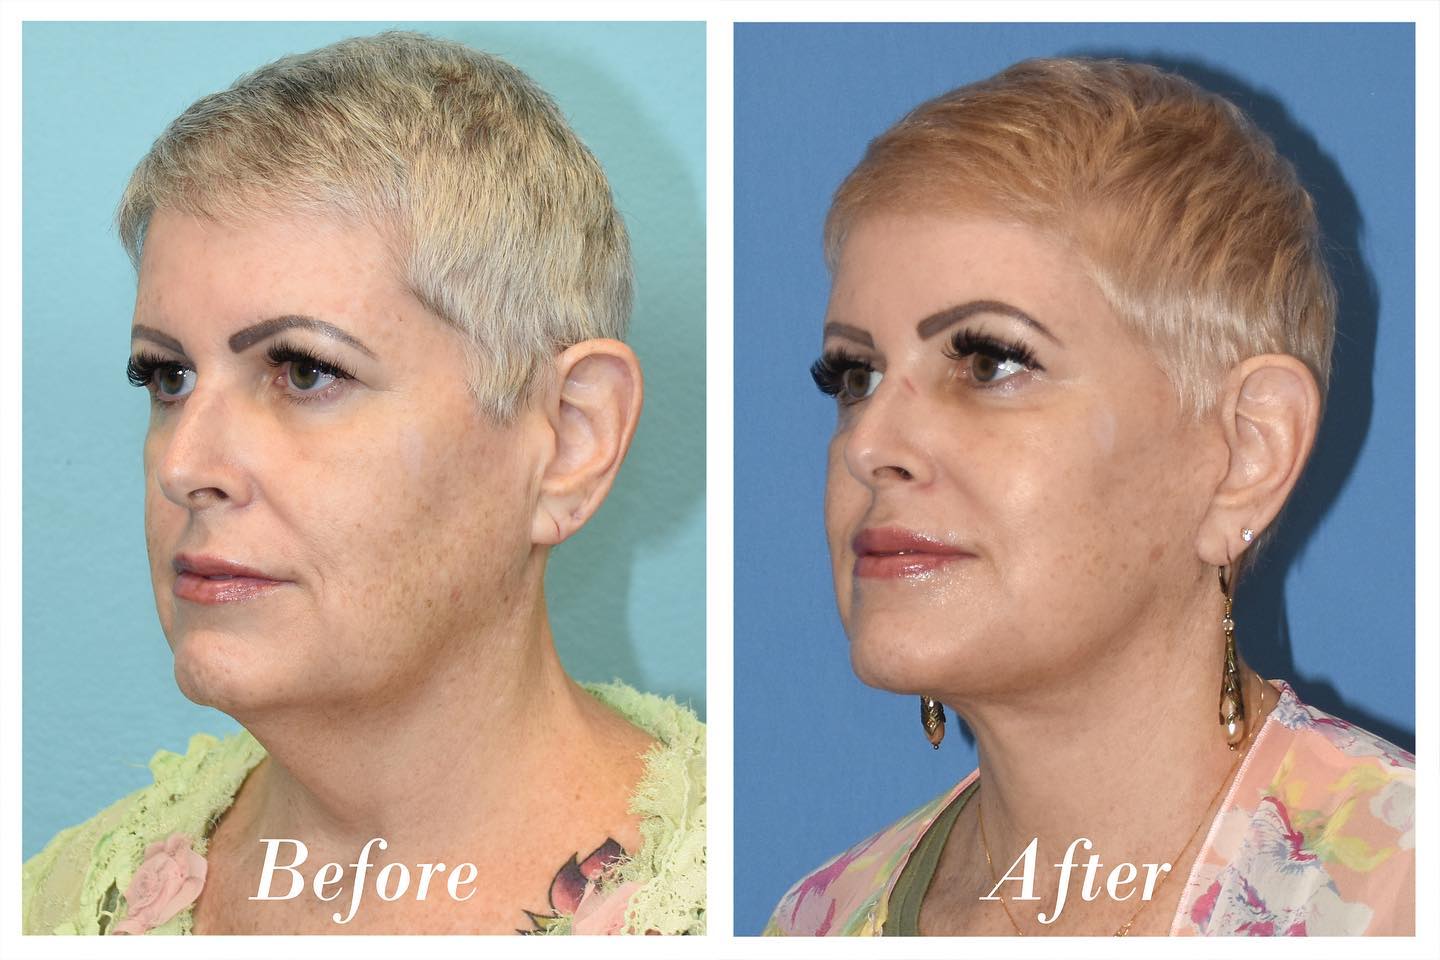 Facelift C02 Laser Skin Resurfacing Before & After Image